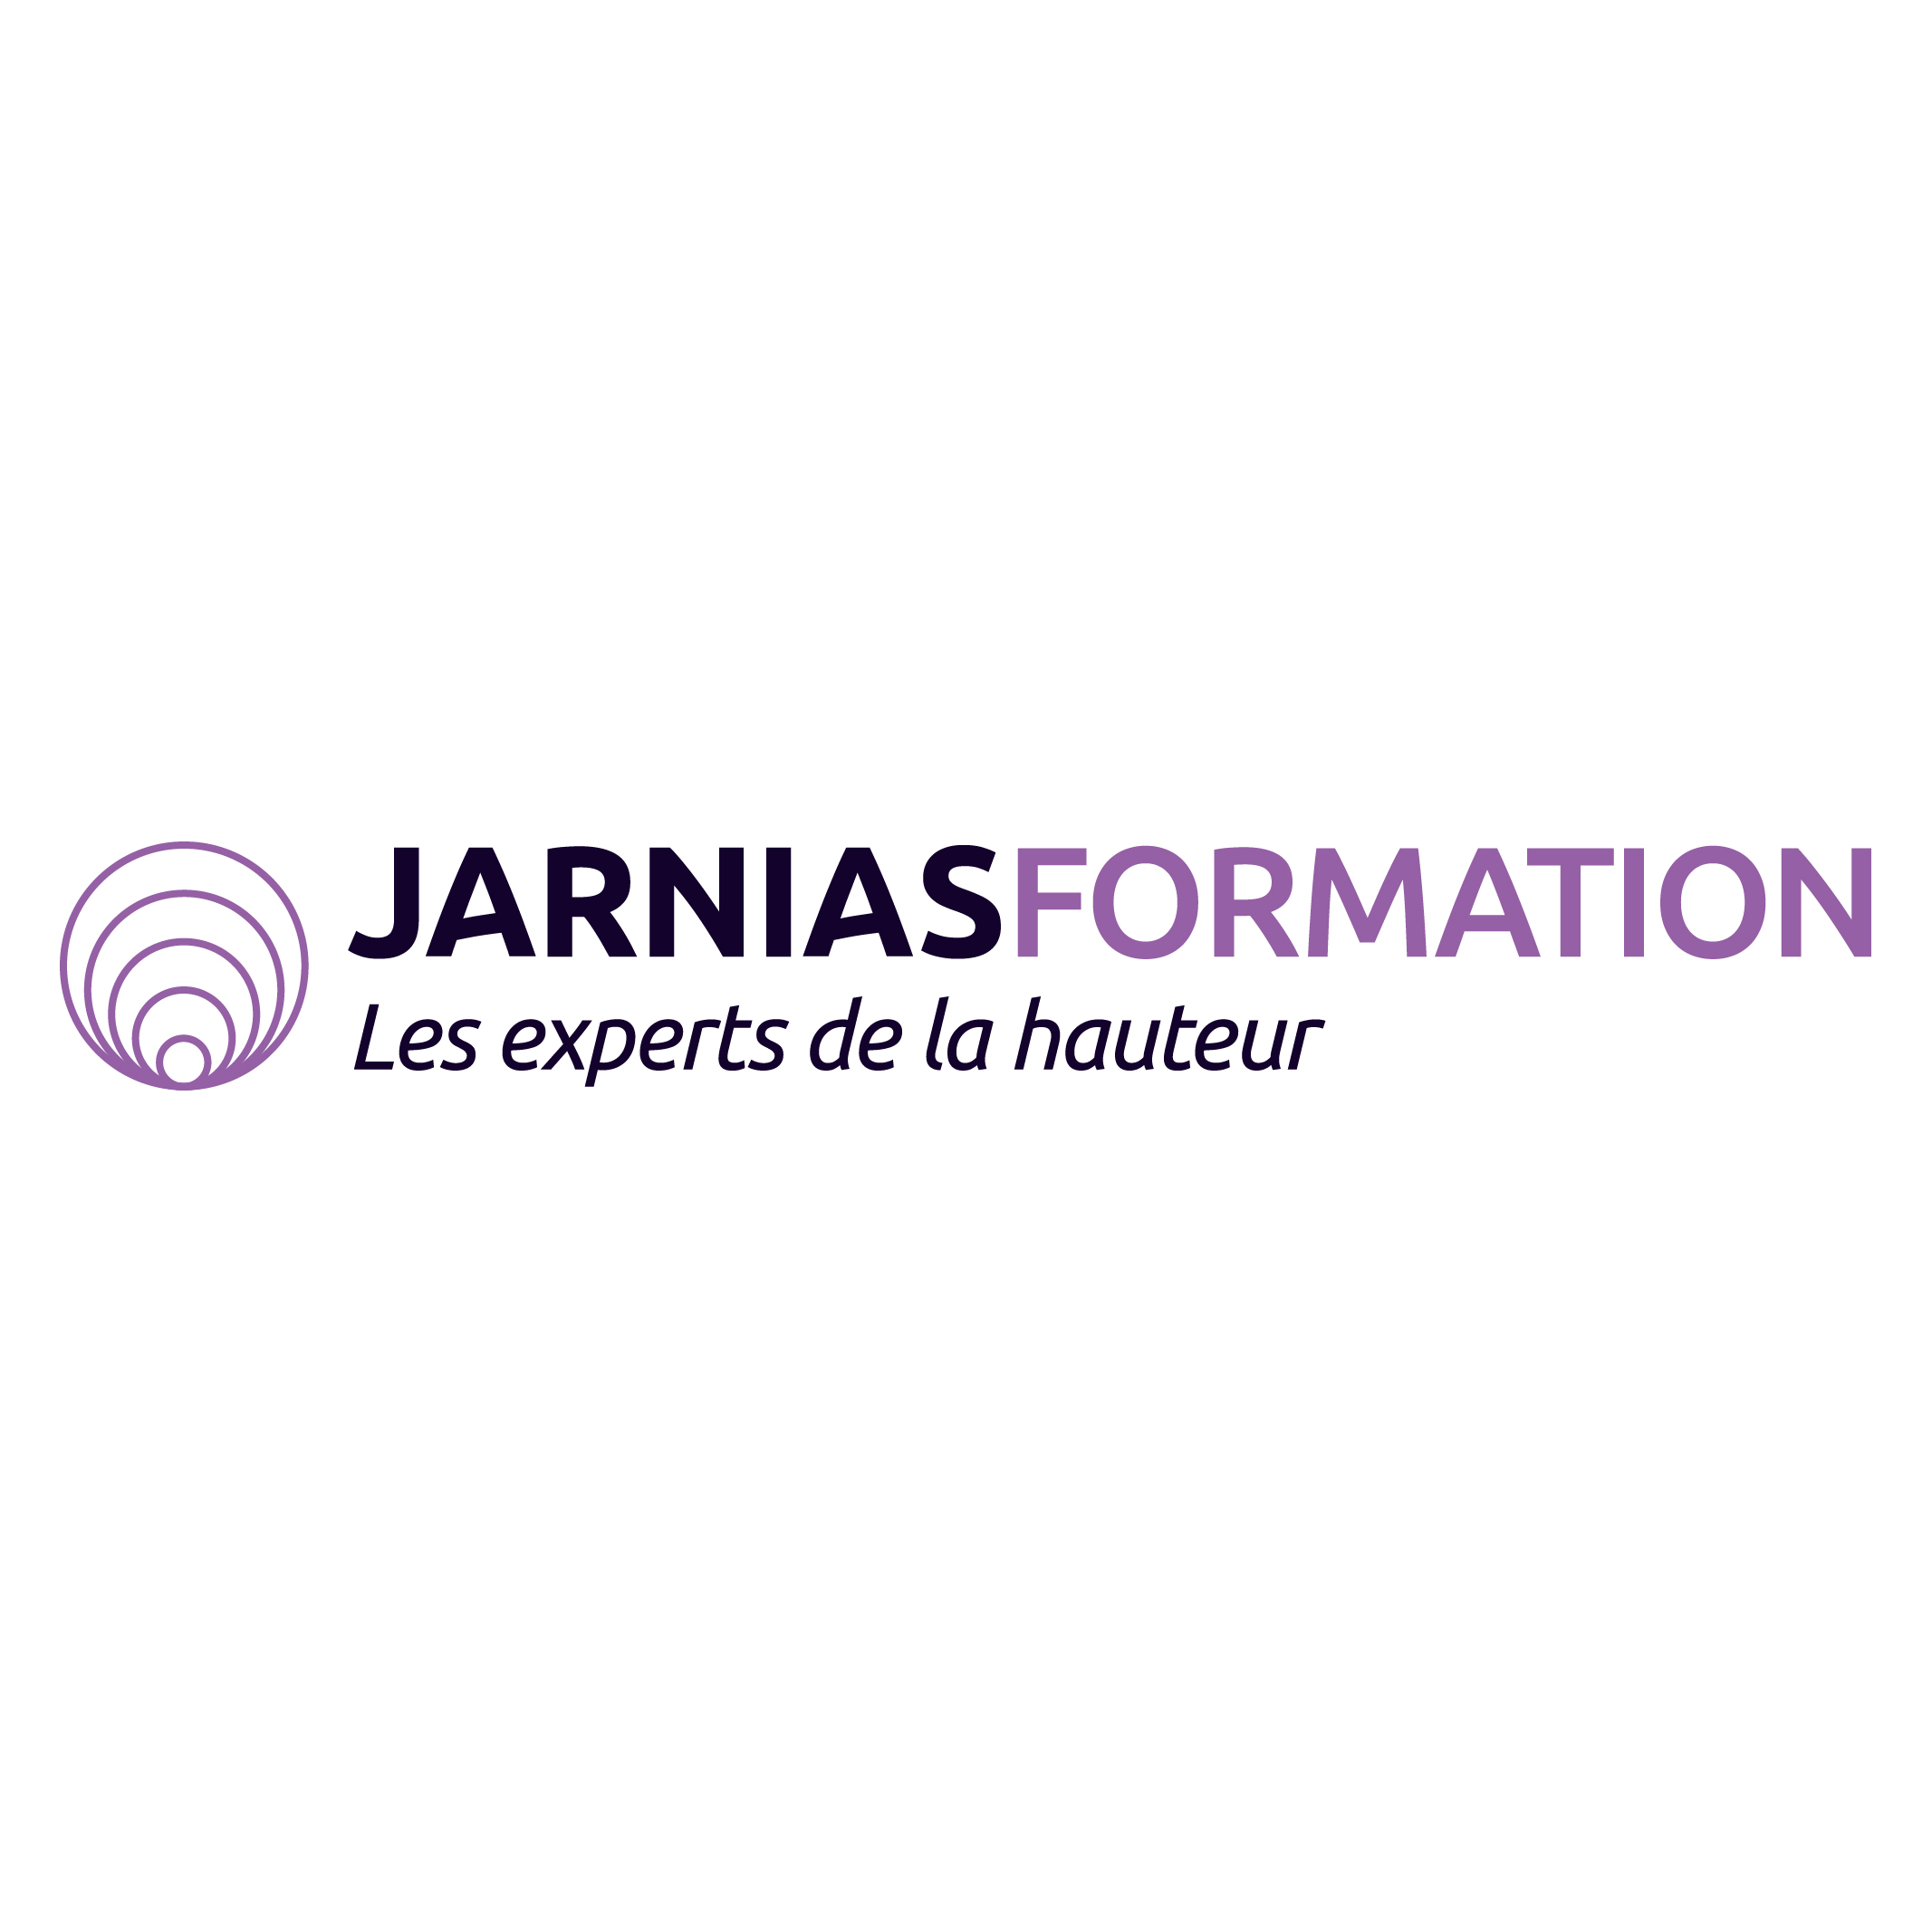 JARNIAS FORMATION